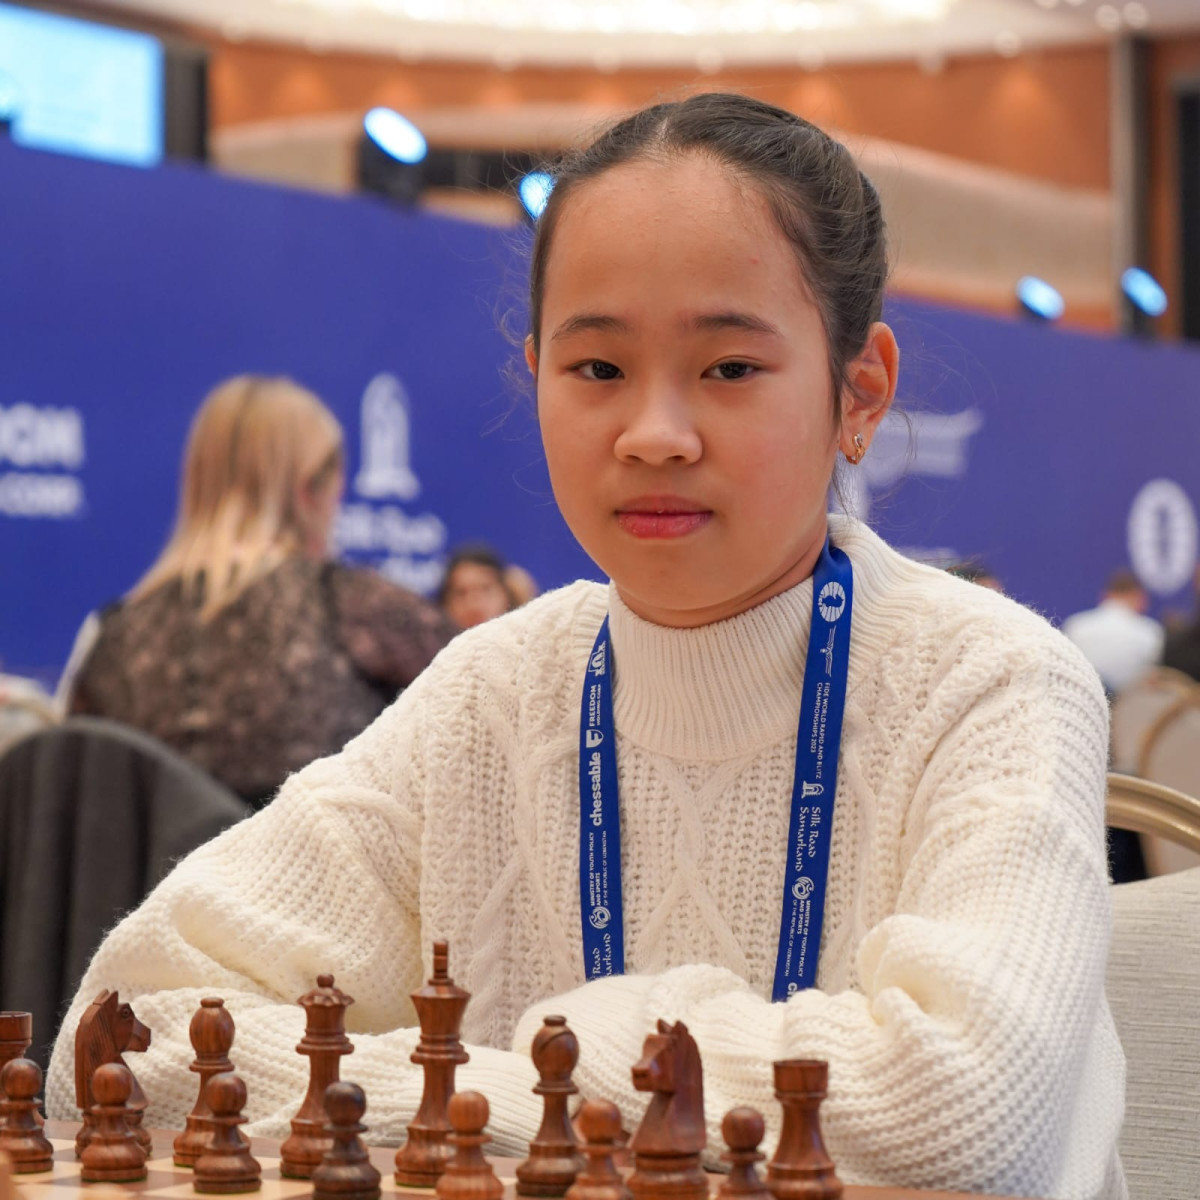 Шахматта эмоцияға берілуге болмайды – өзінен үлкендерді жеңген 12 жастағы Айару